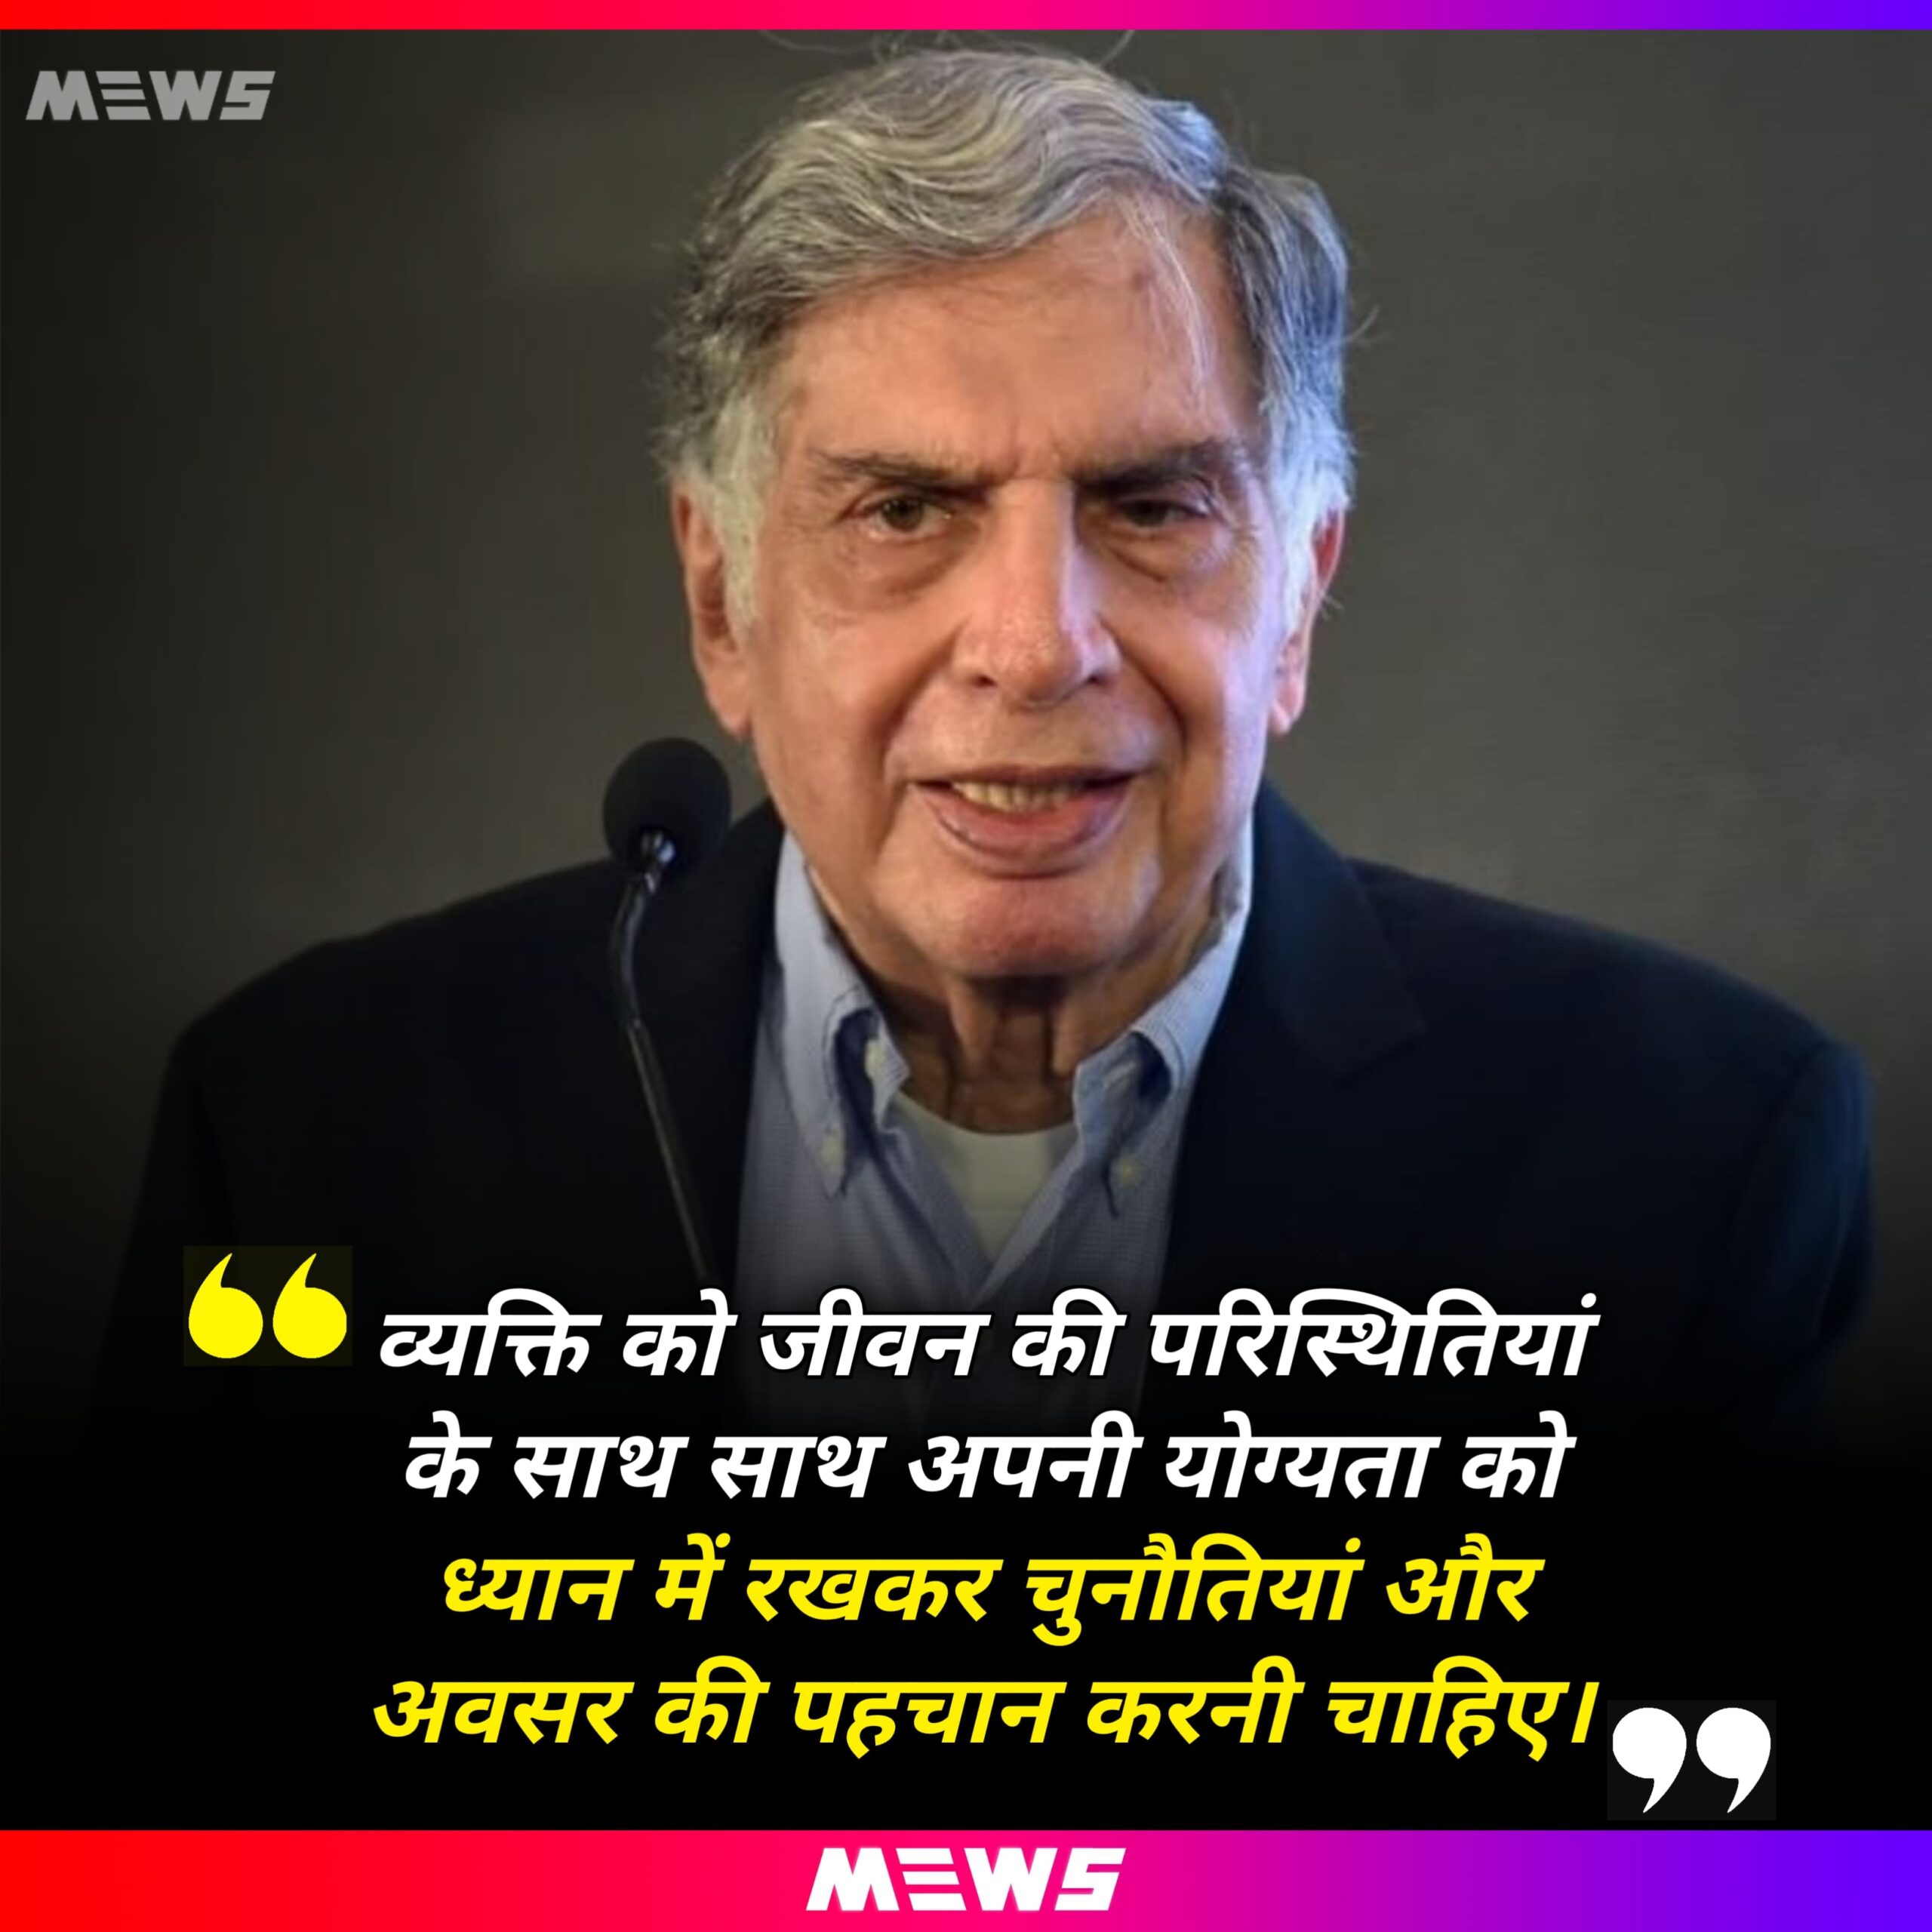 Ratan Tata quotes Hindi